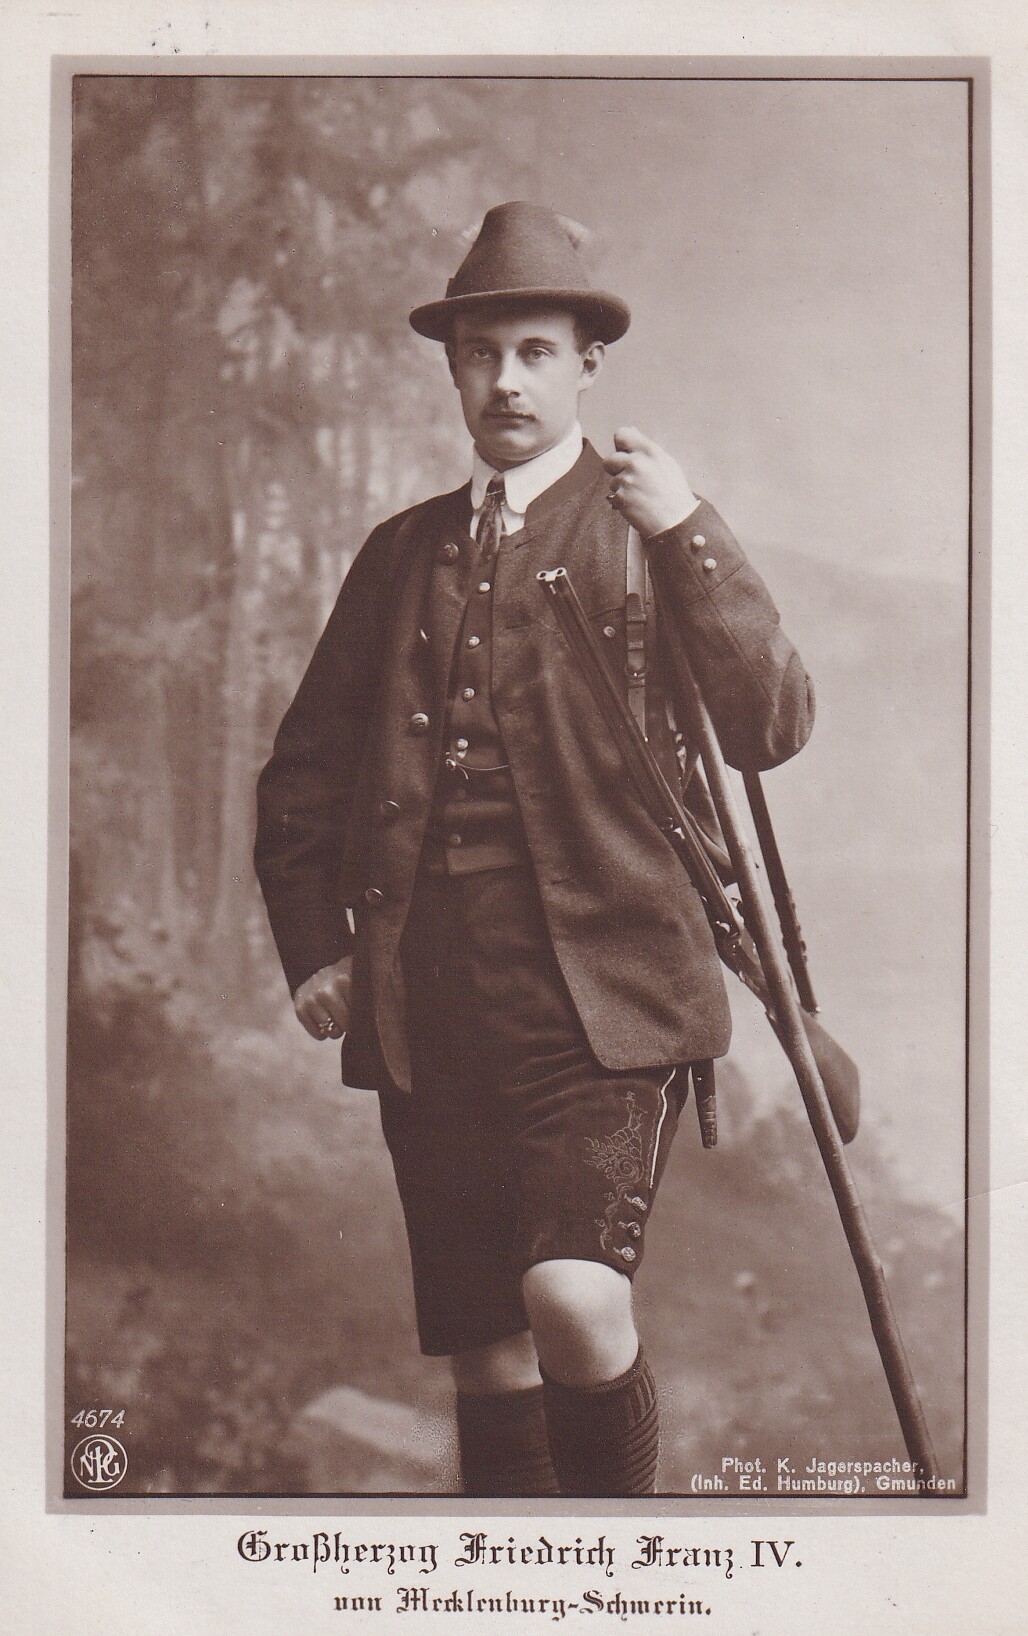 Bildpostkarte mit Foto von Großherzog Friedrich Franz IV. von Mecklenburg-Schwerin (1882-1945), 1913 (Schloß Wernigerode GmbH RR-F)